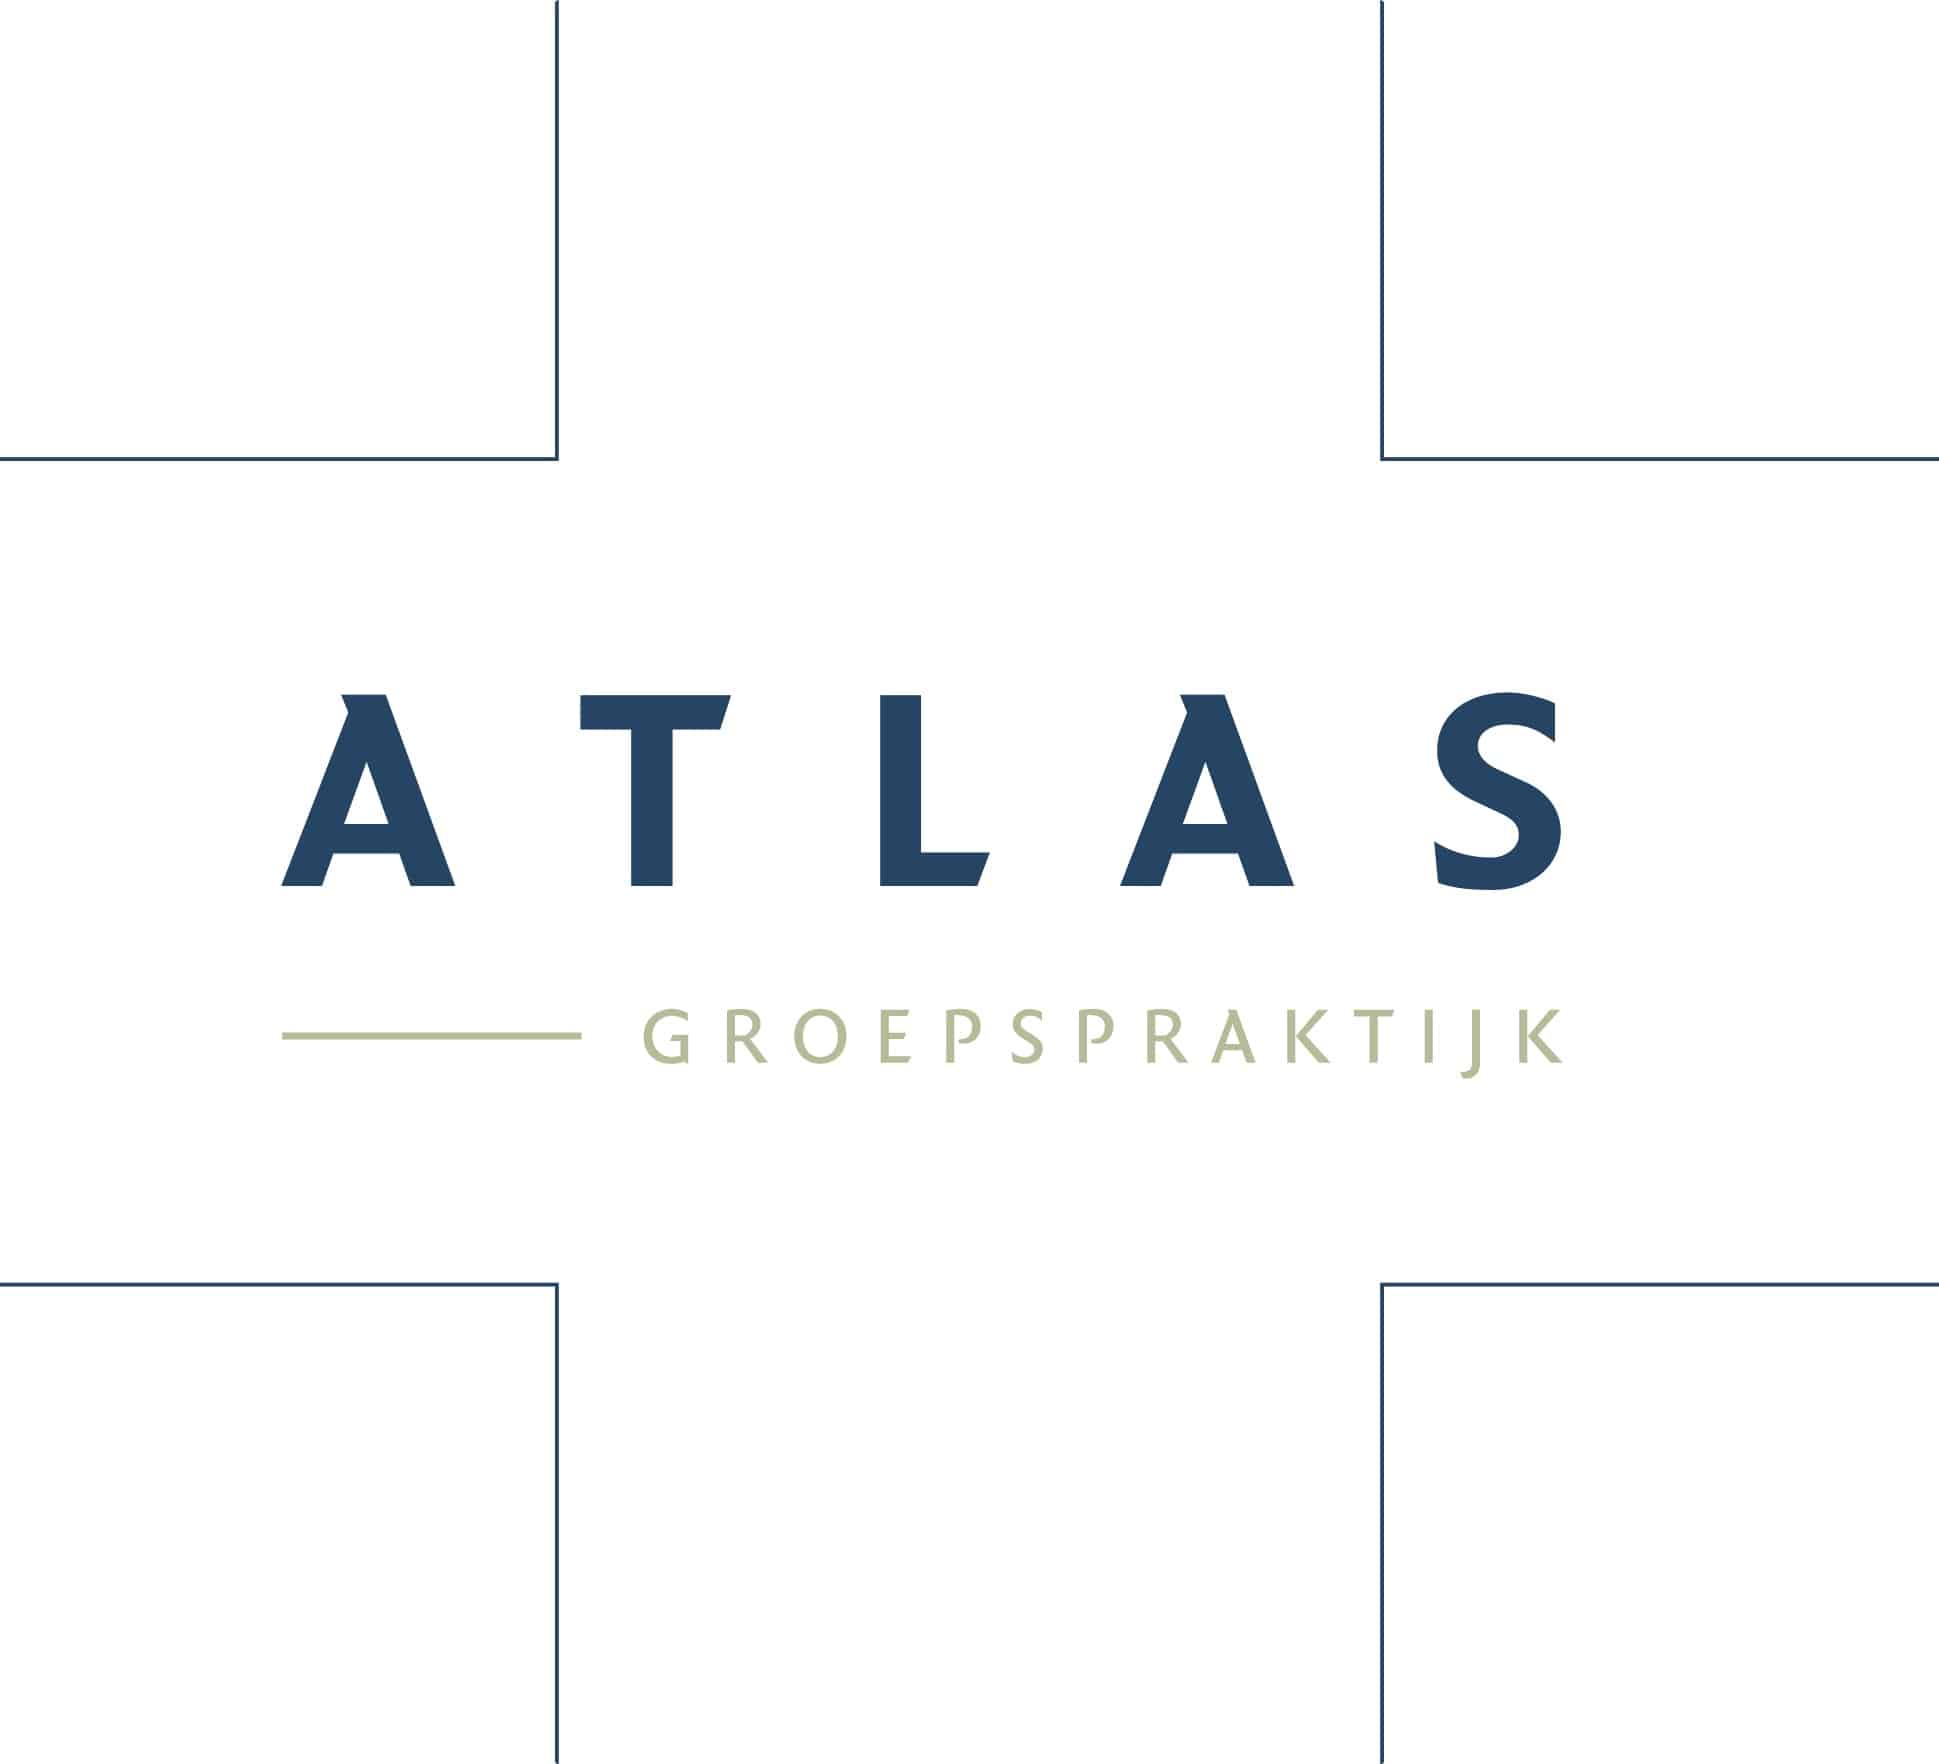 Groepspraktijk Atlas, uw huisartsenpraktijk in Berlaar-Heikant. Raadpleeg onze ervaren huisartsen.